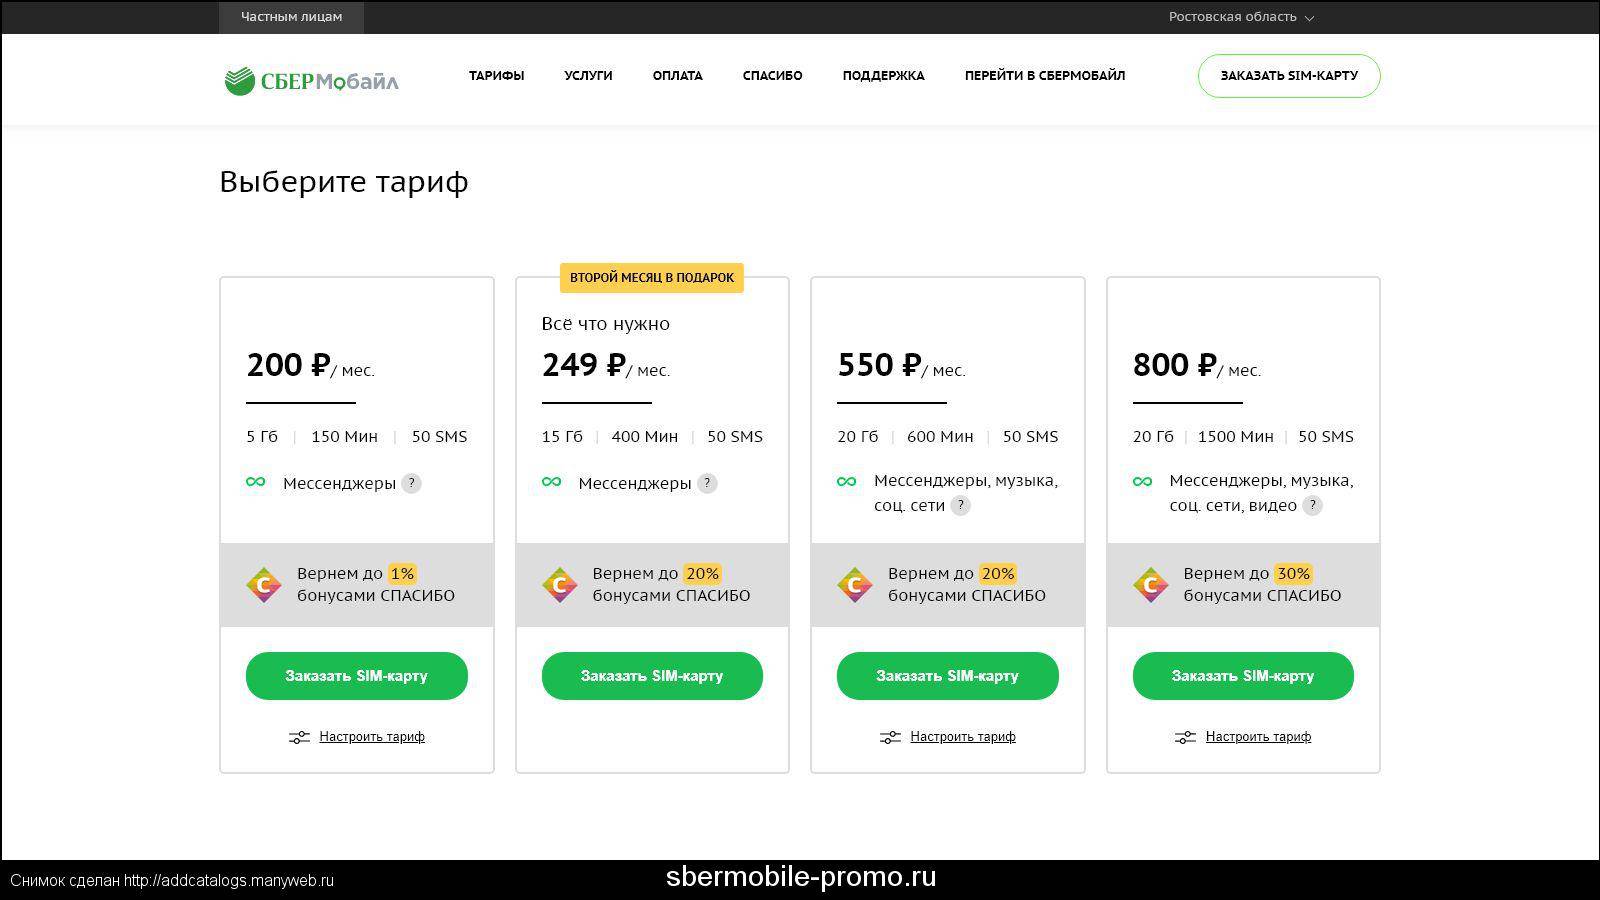 Сбермобайл отзывы - операторы мобильной связи - первый независимый сайт отзывов россии